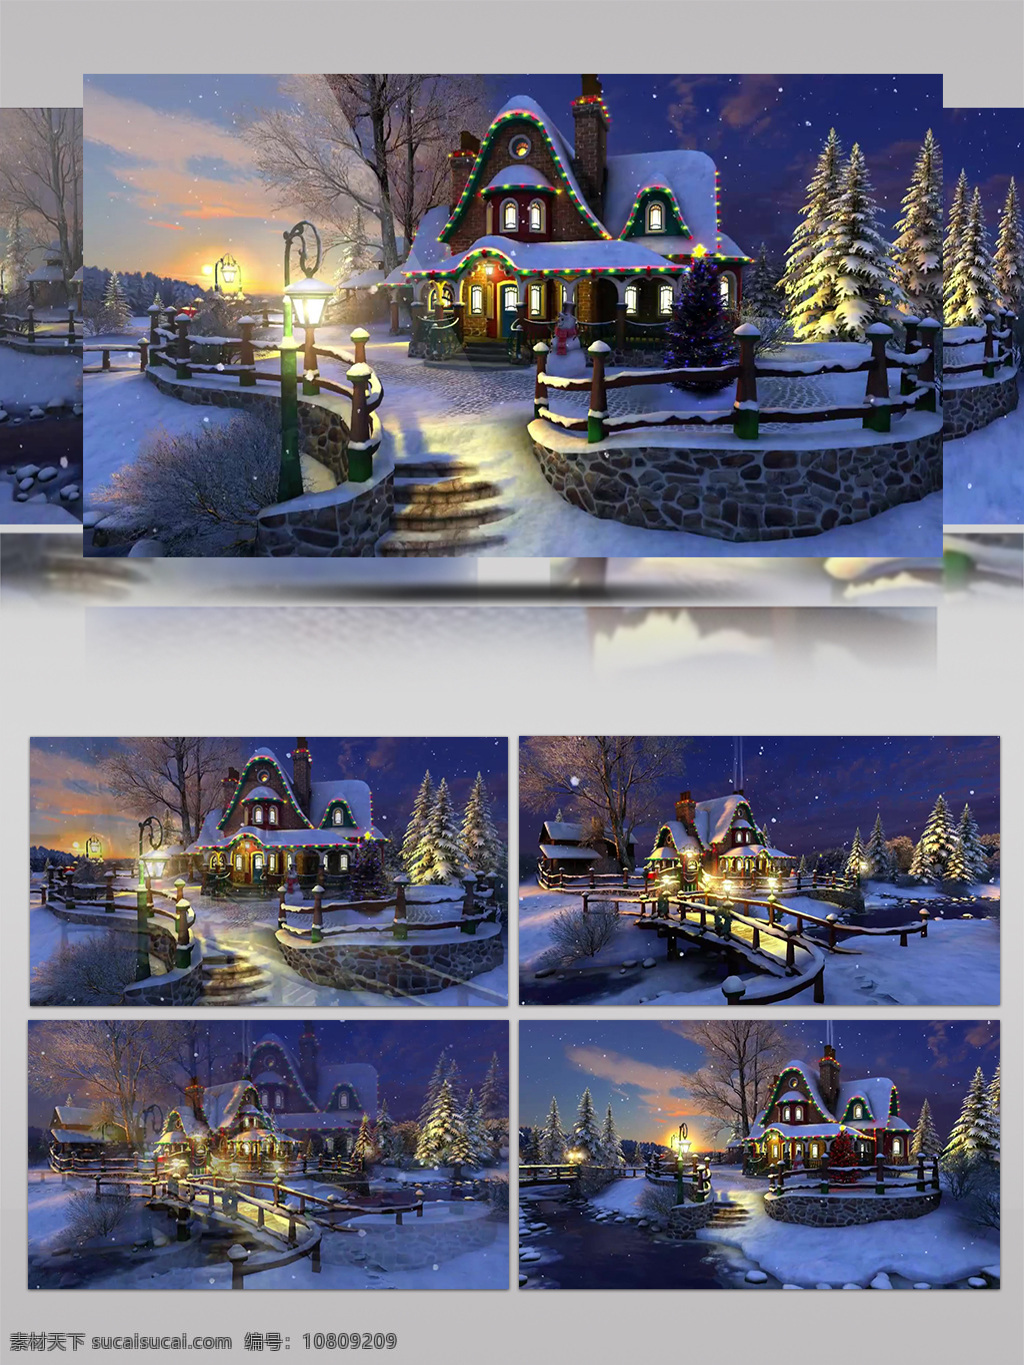 圣诞 小屋 雪景 含音乐 圣诞节 新年 卡通动漫 节日祝福 欢乐素材 2018 雪人 狗年 圣诞老人 圣诞歌曲 圣诞通用素材 圣诞树